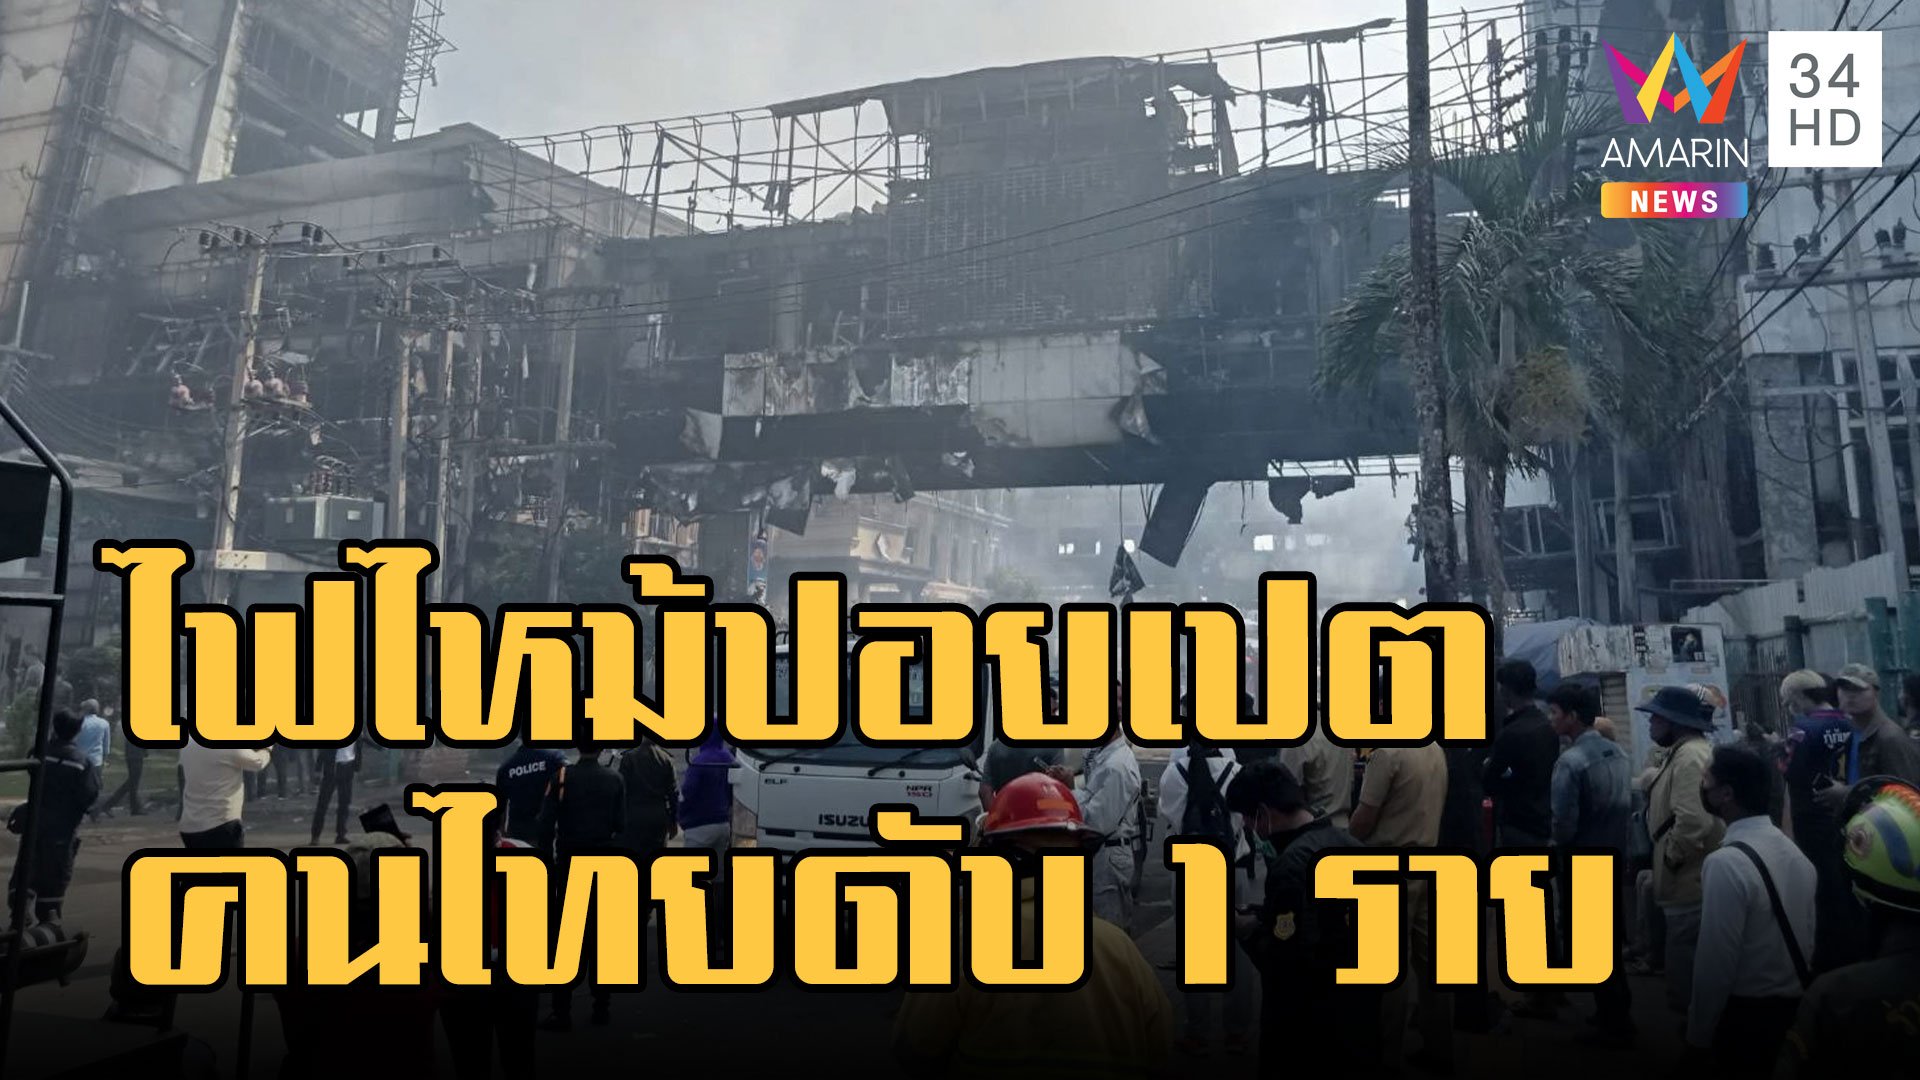 ไฟไหม้ปอยเปต บ่อนคาสิโน ดับ 11 ราย สลดคนไทยเสียชีวิต | ข่าวเที่ยงอมรินทร์ | 29 ธ.ค. 65 | AMARIN TVHD34